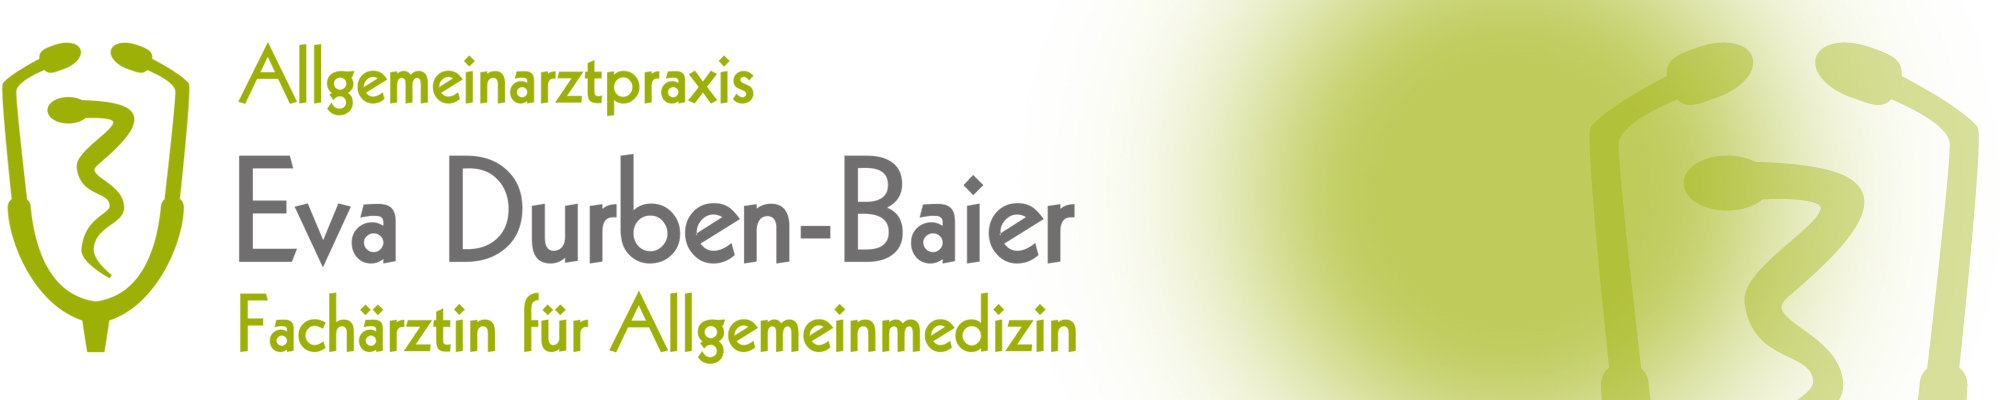 Allgemeinarztpraxis Eva Durben-Baier